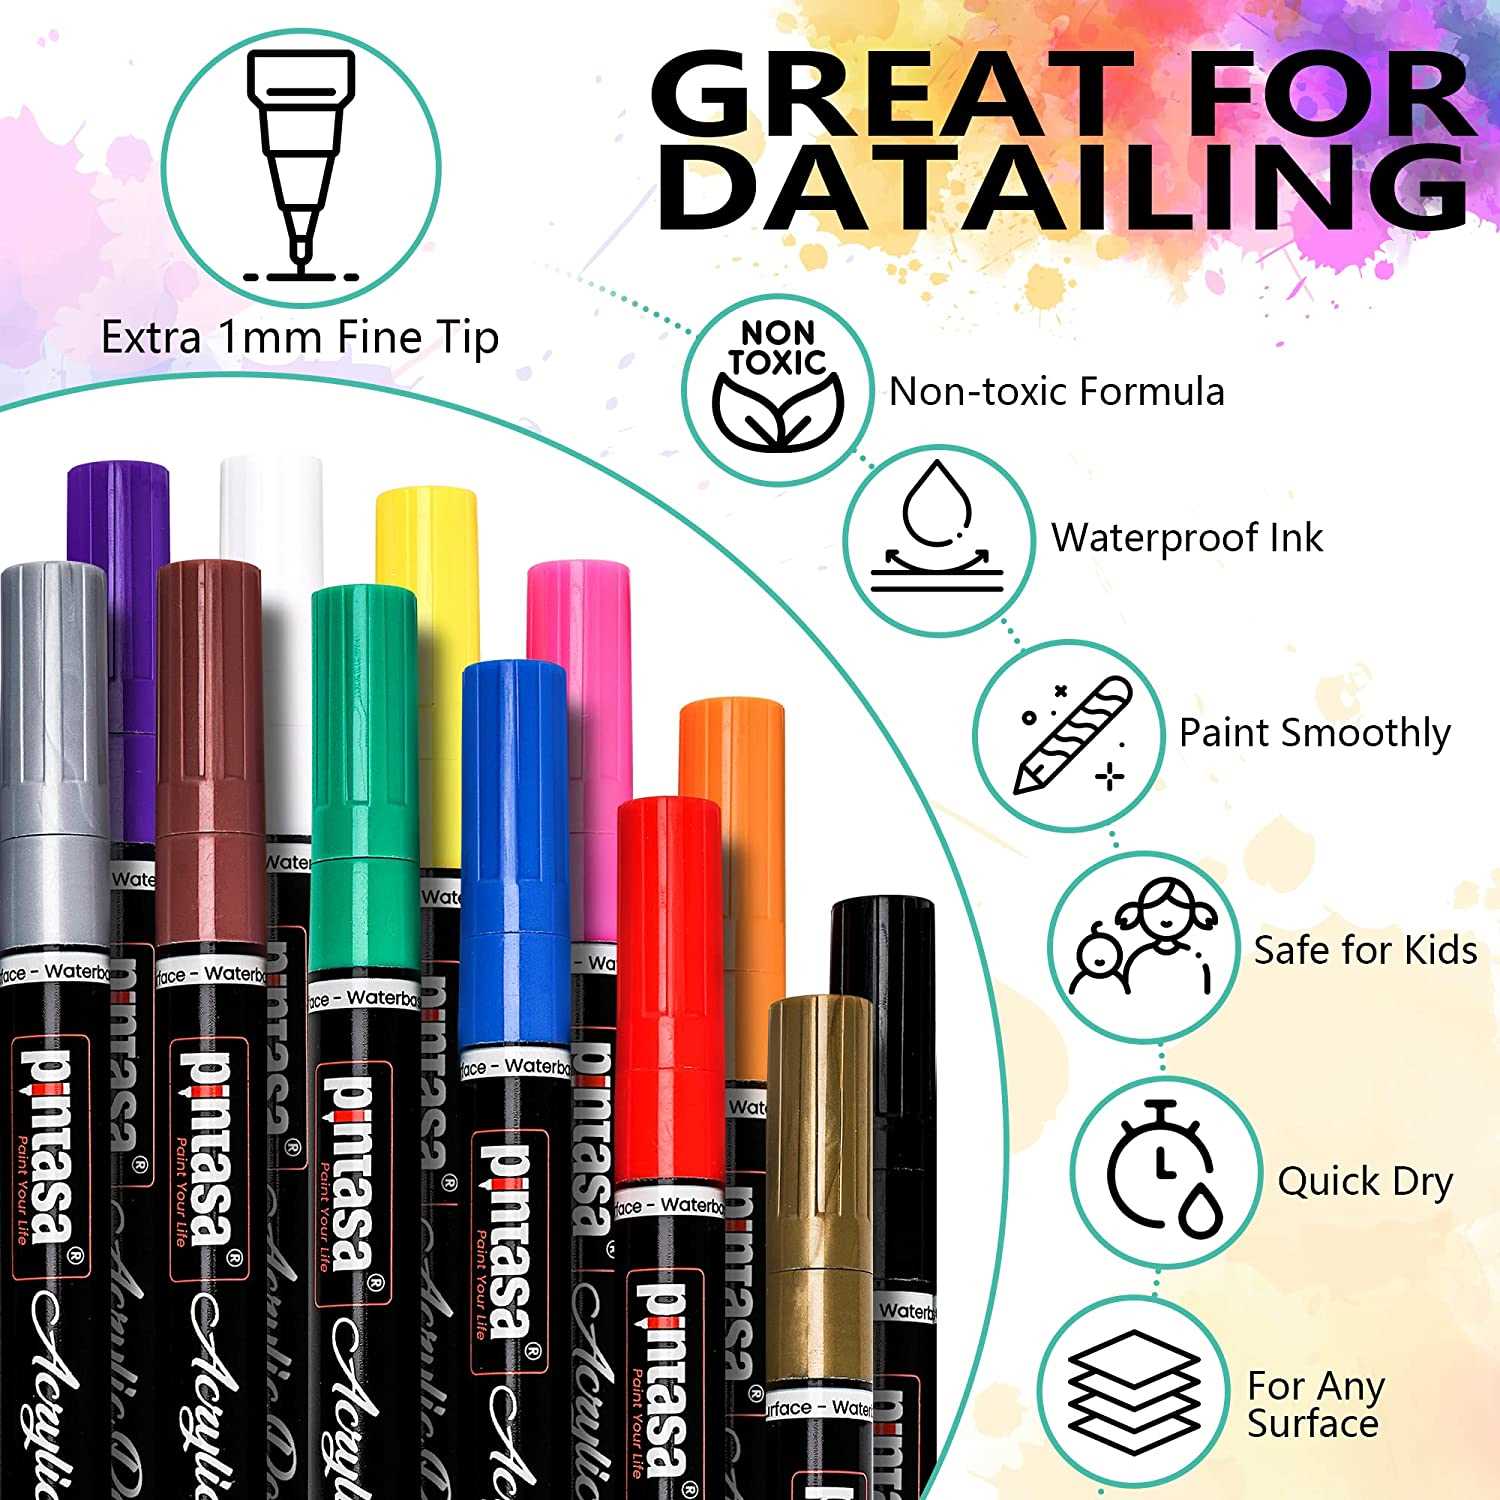 Acrylic Paint Pens - Fine Tip